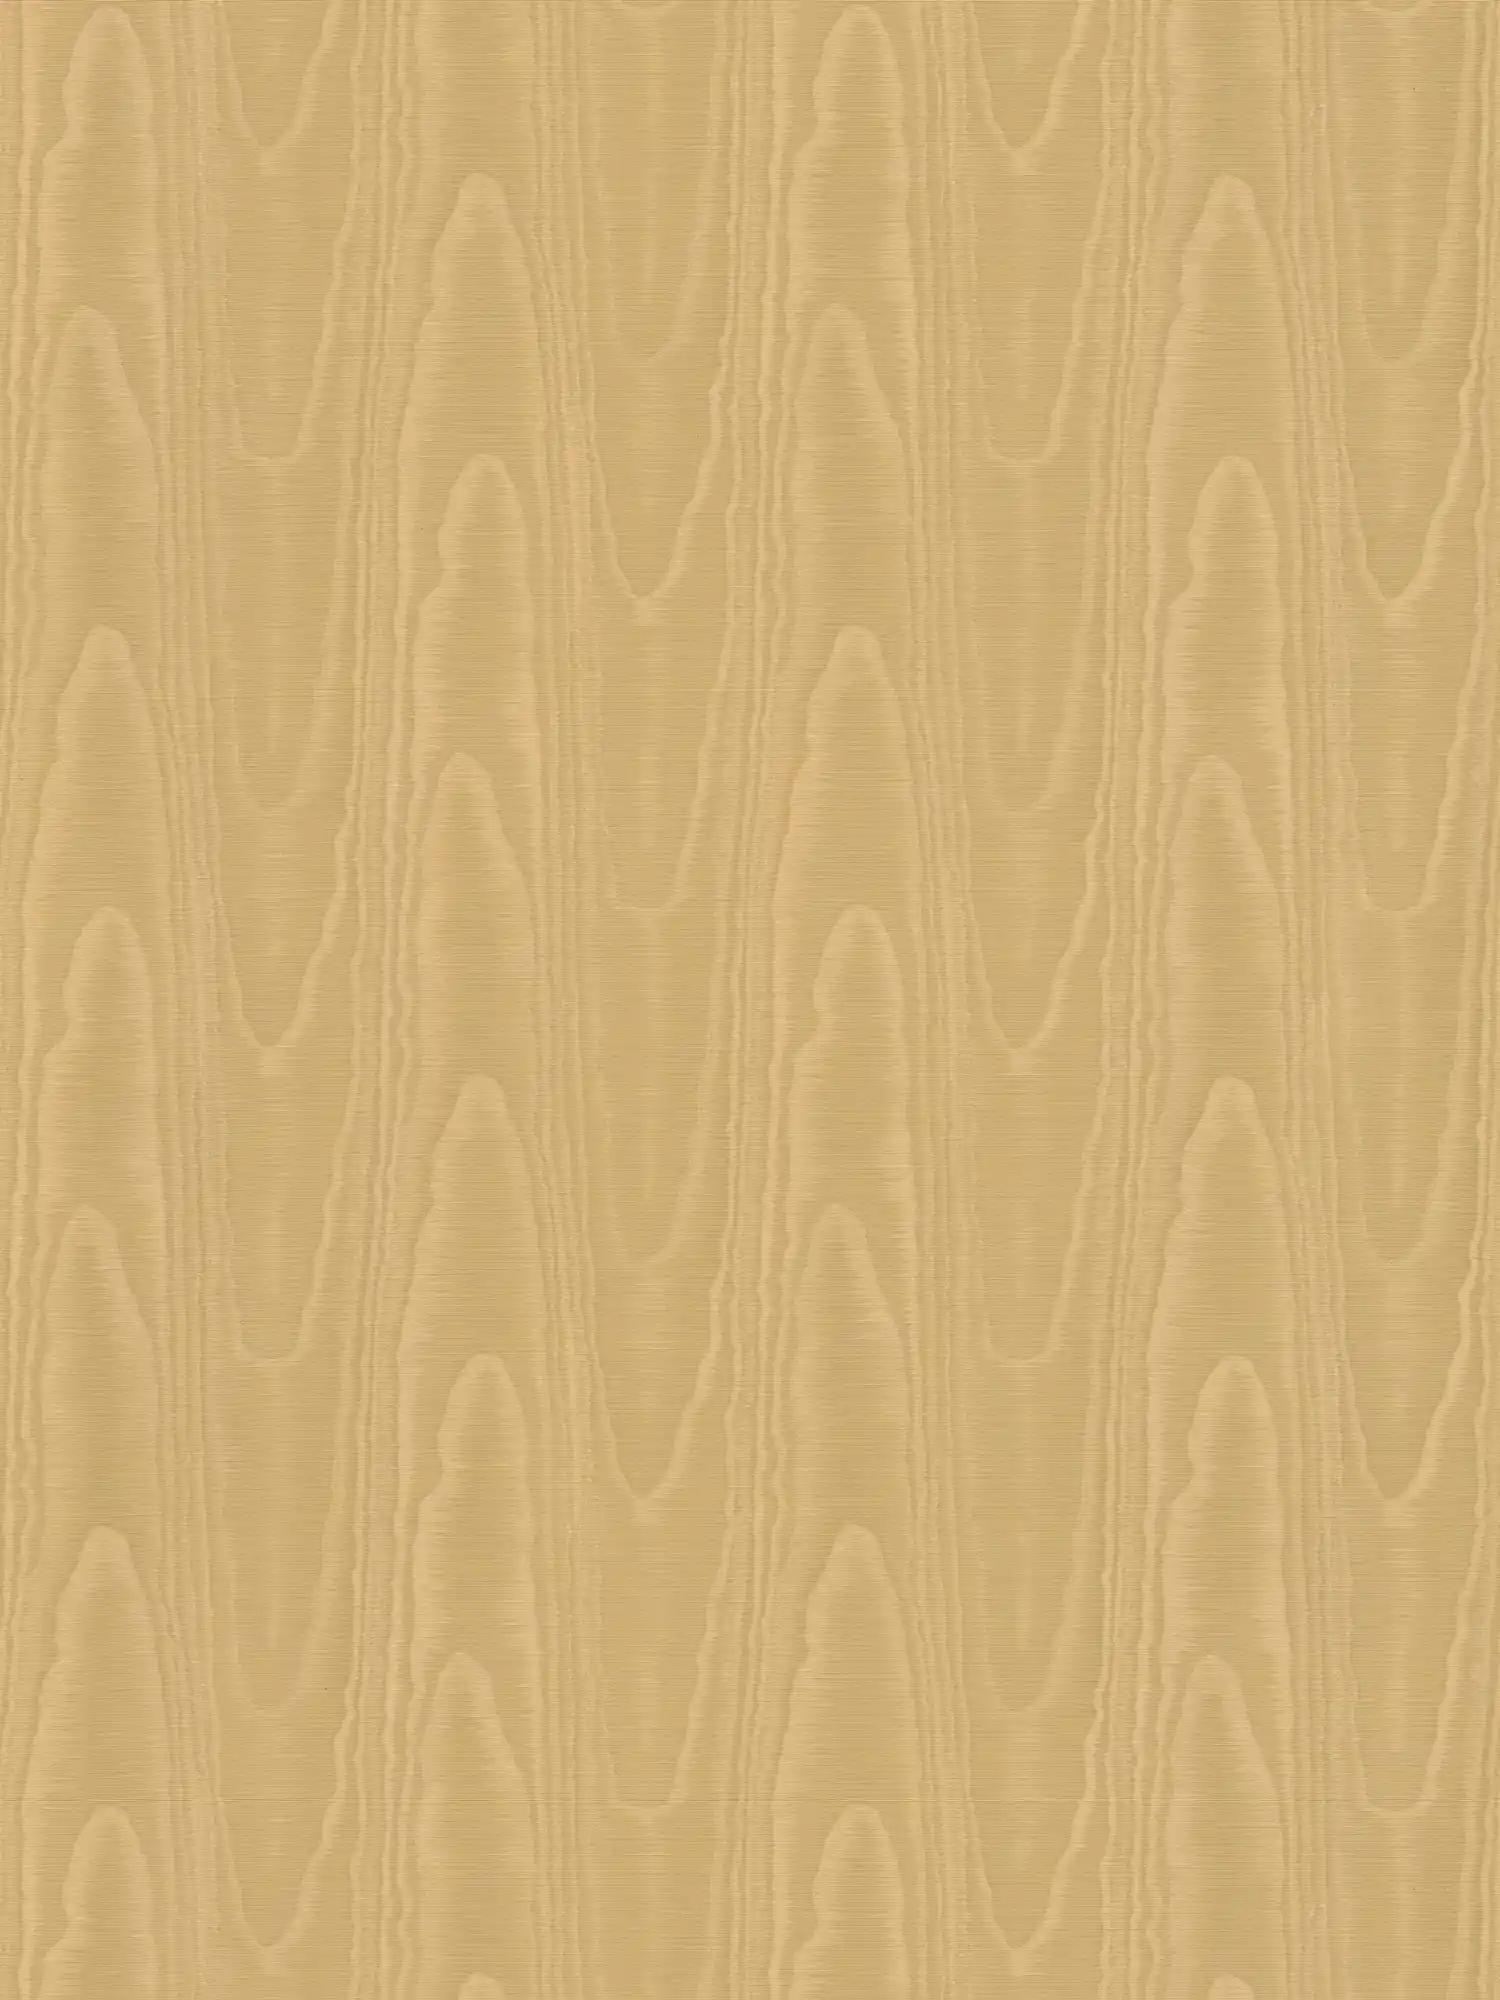 Textiloptik Tapete mit Seiden Moiré Effekt – Braun, Gelb
